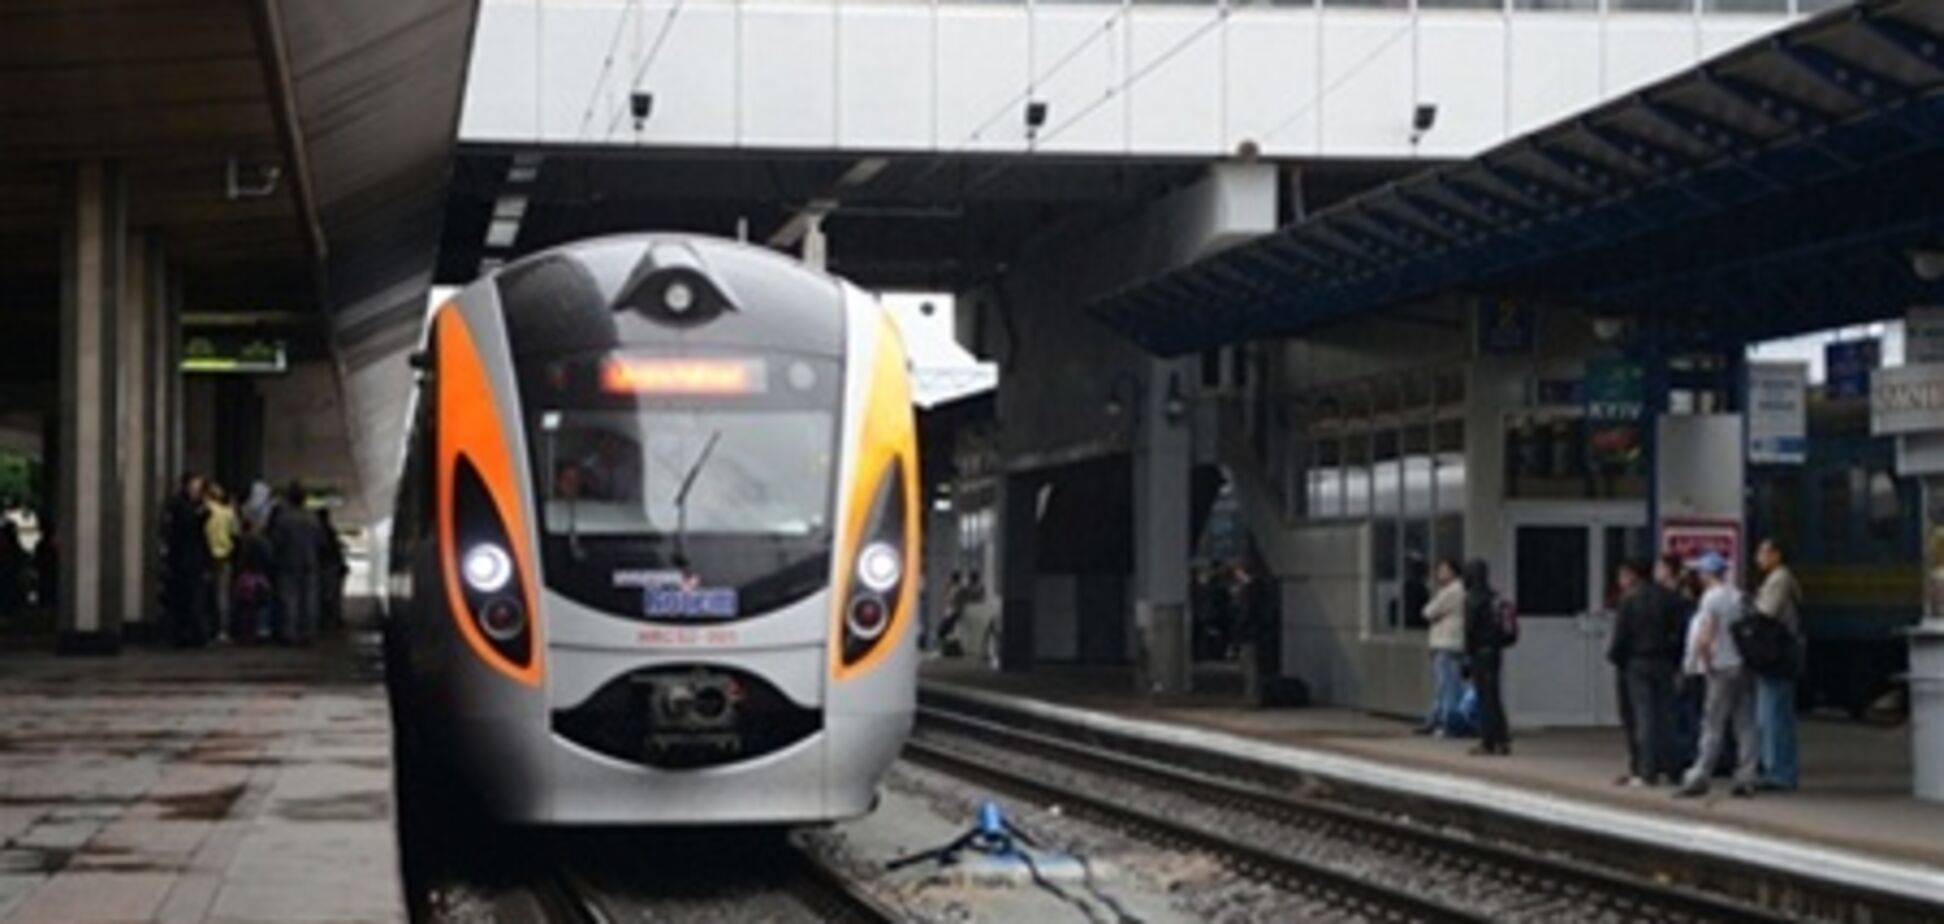 Колесников открыл техническую станцию для поездов 'Hyundai'